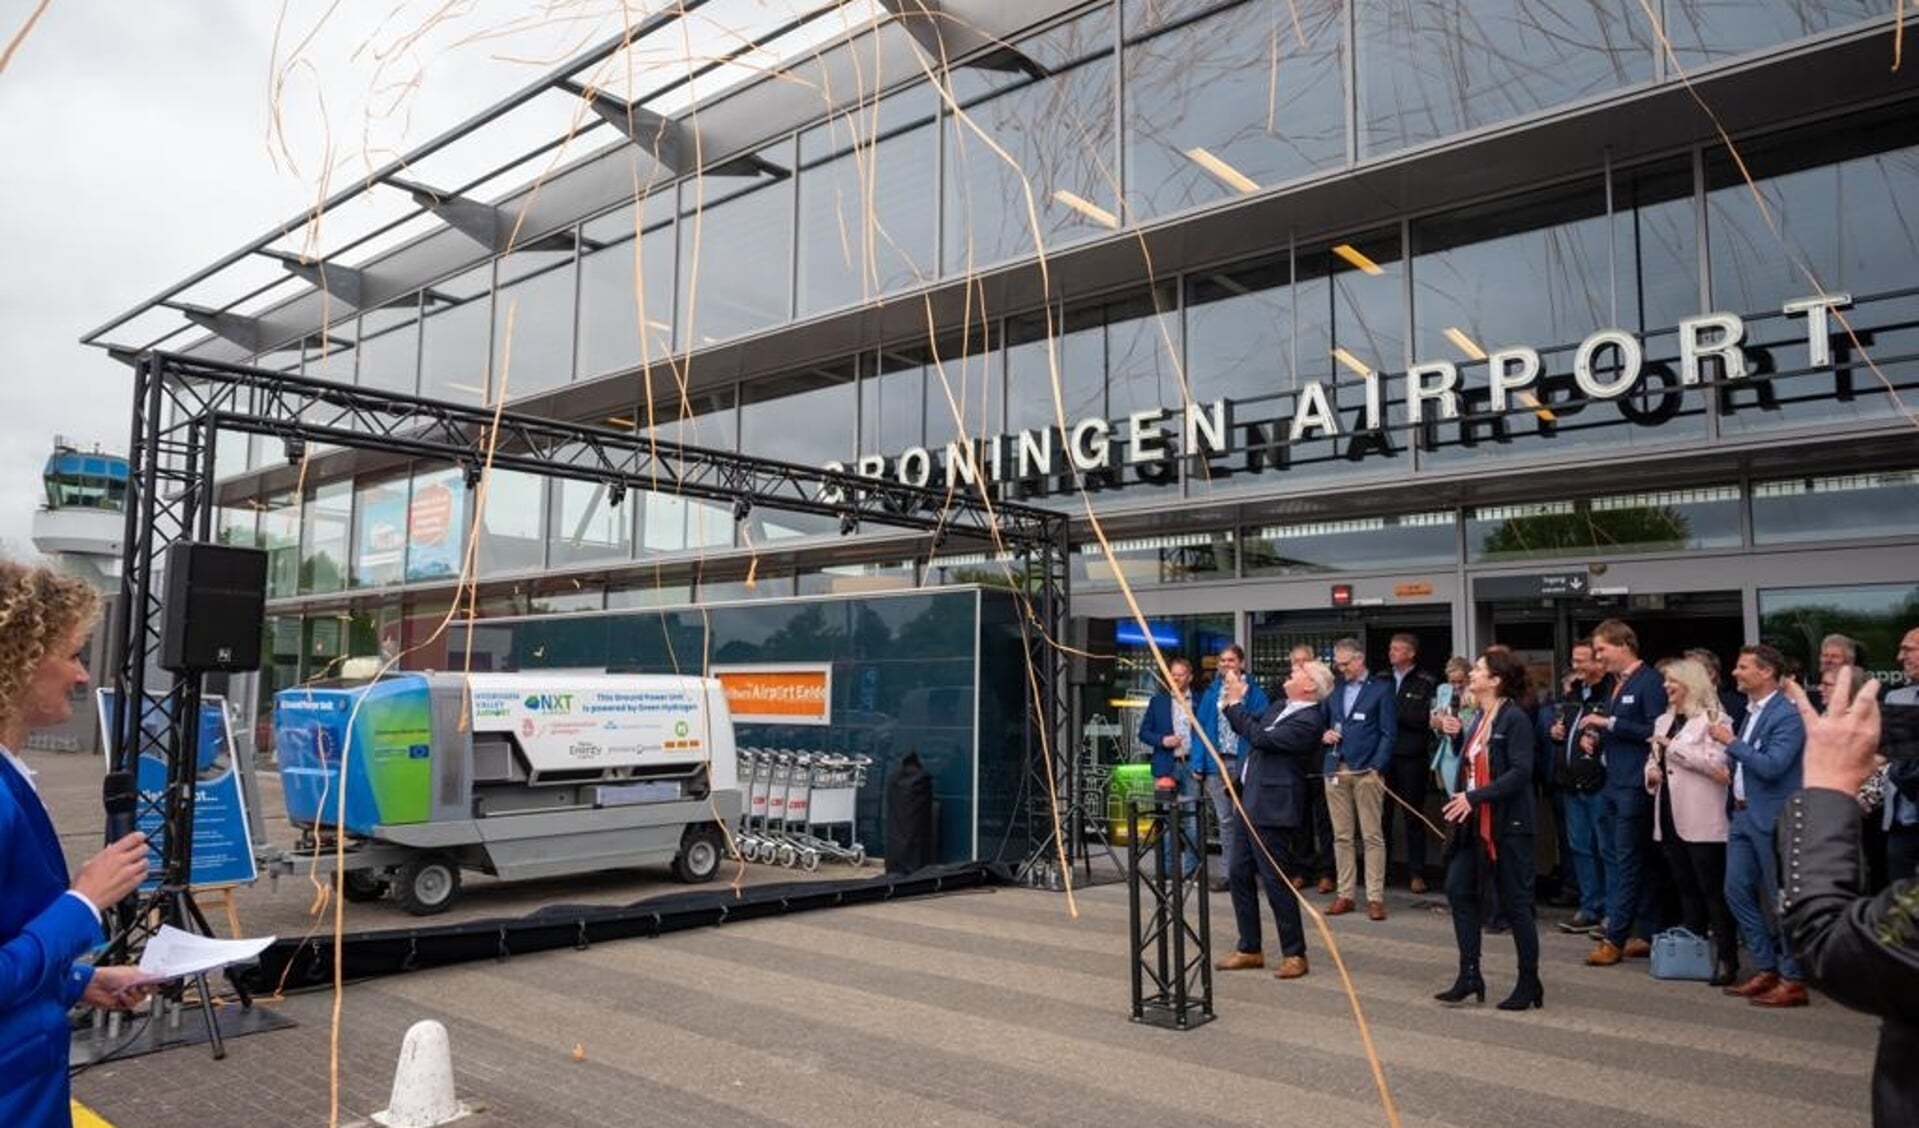 De wereldprimeur van de onthulling van de waterstof-GPU op Groningen Airport Eelde.